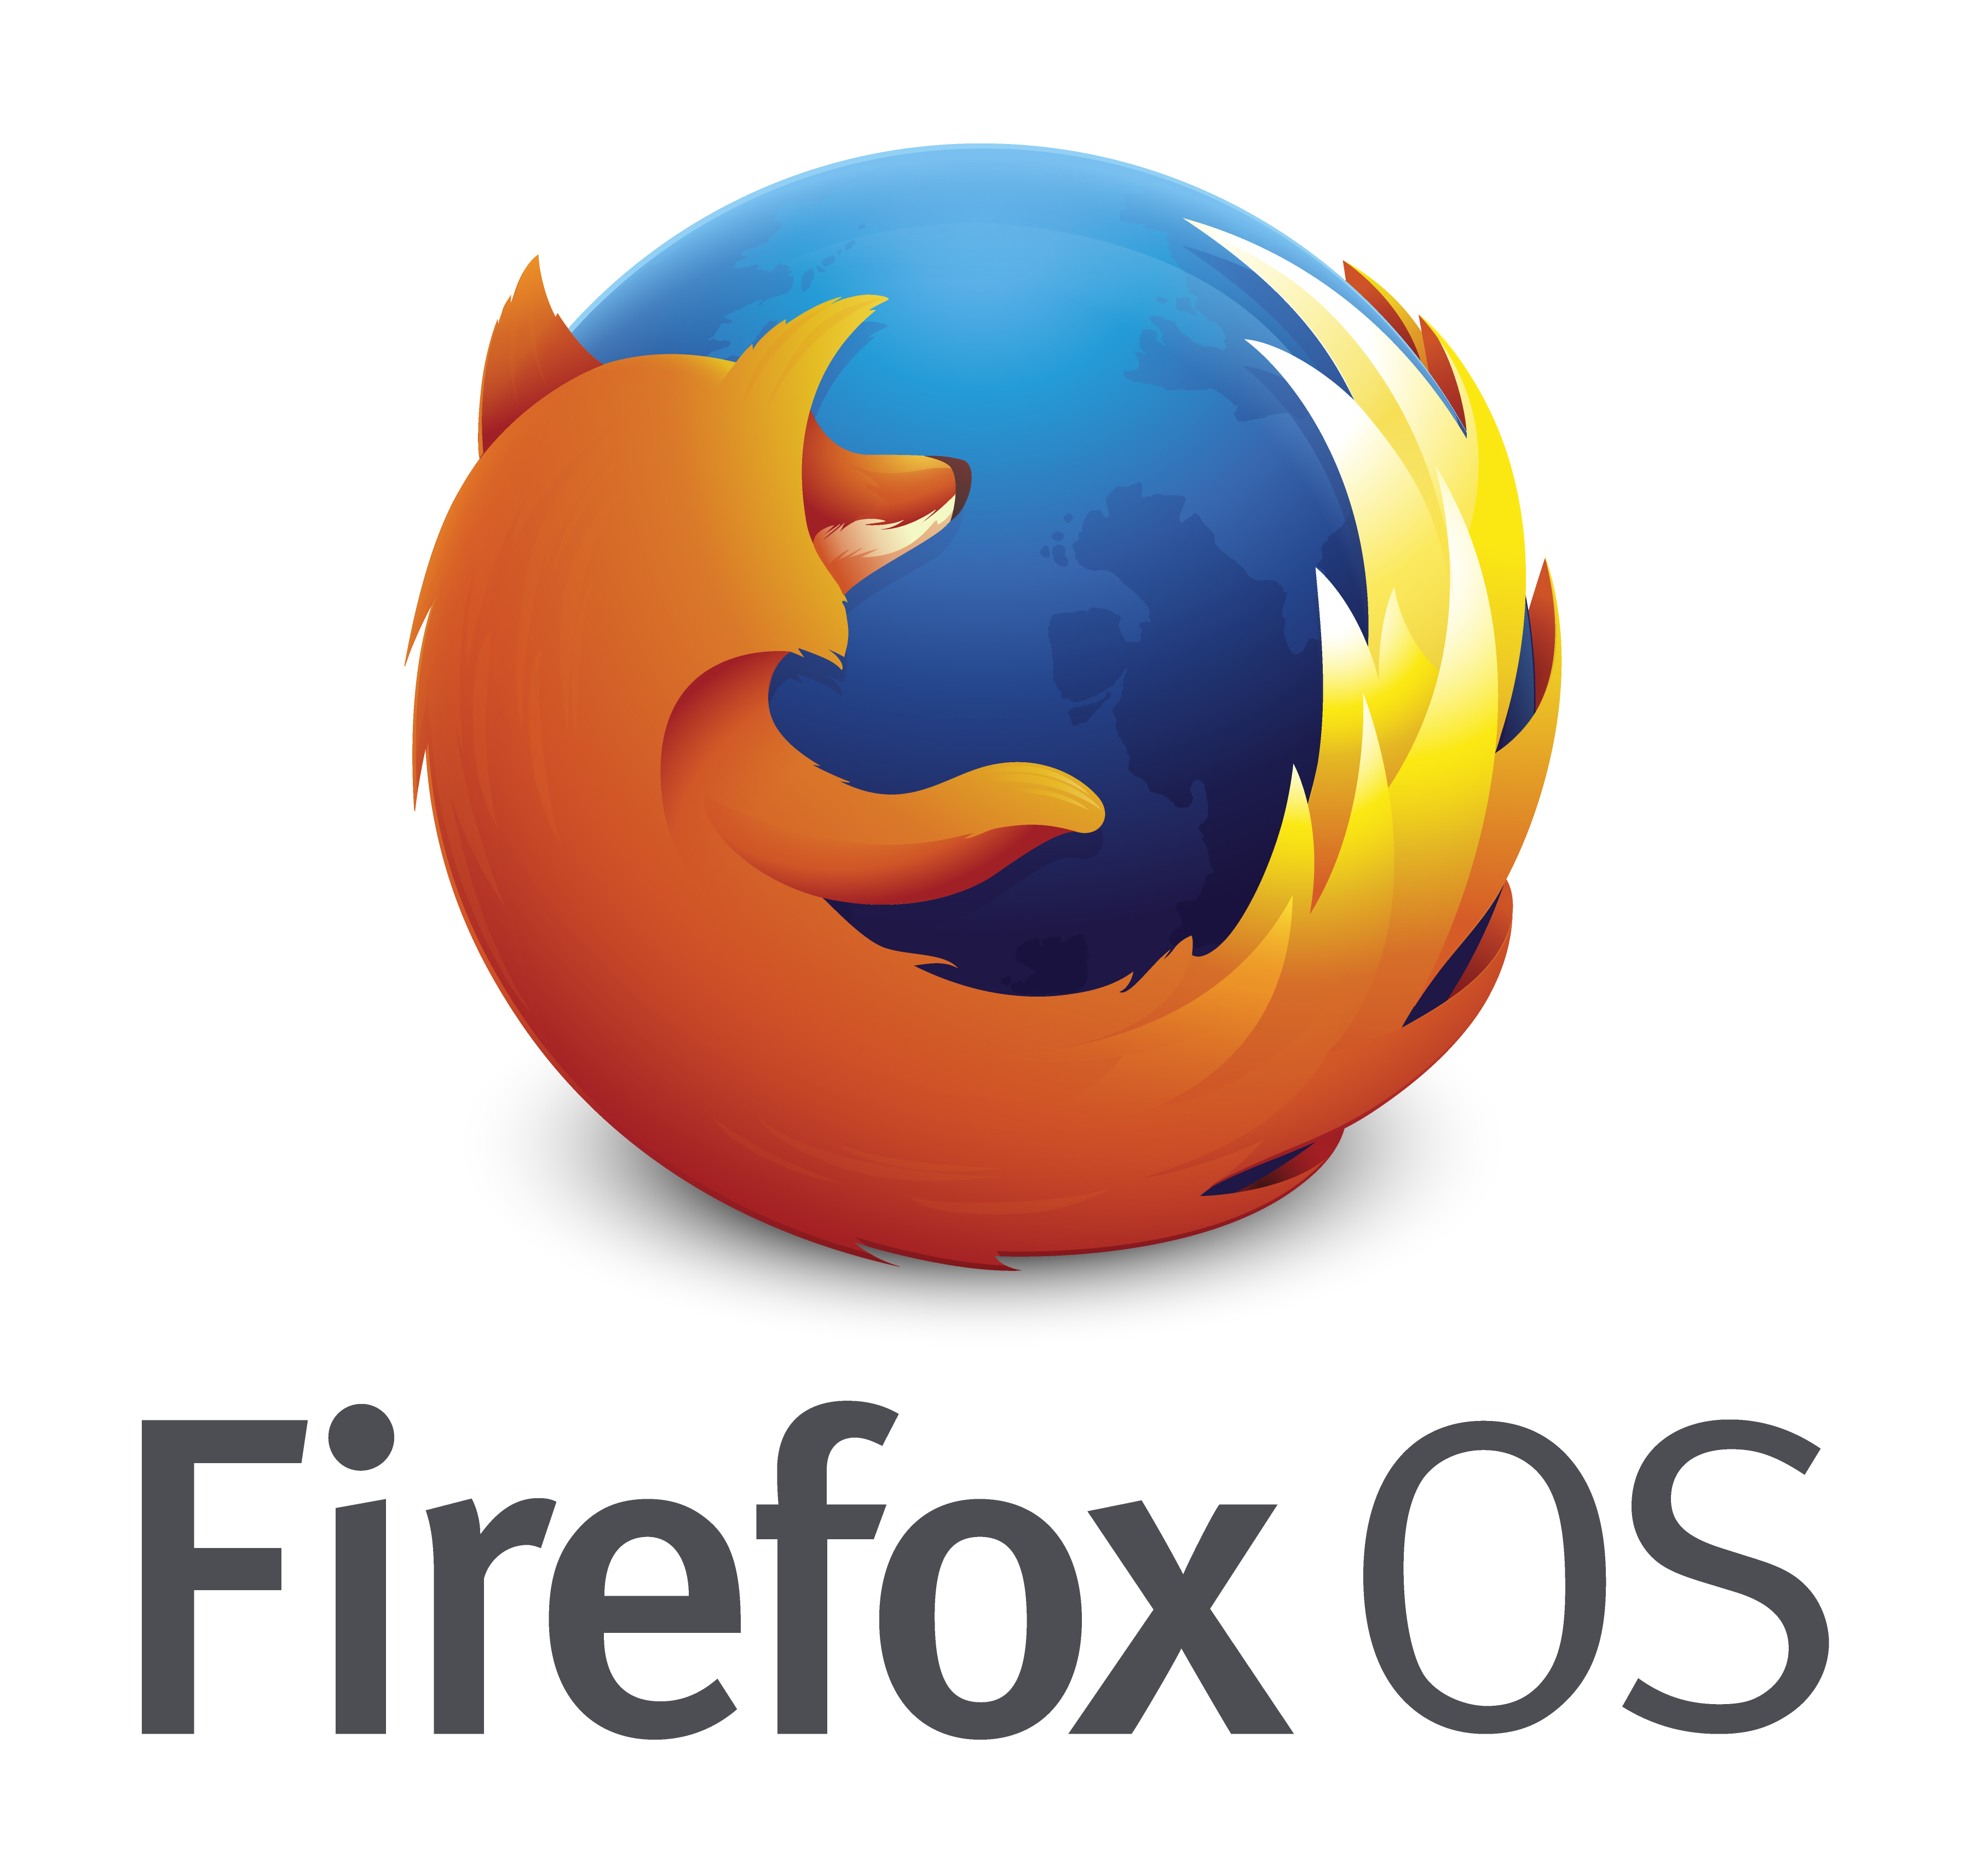 firefox-os_logo-wordmark_RGB-vertical-300dpi